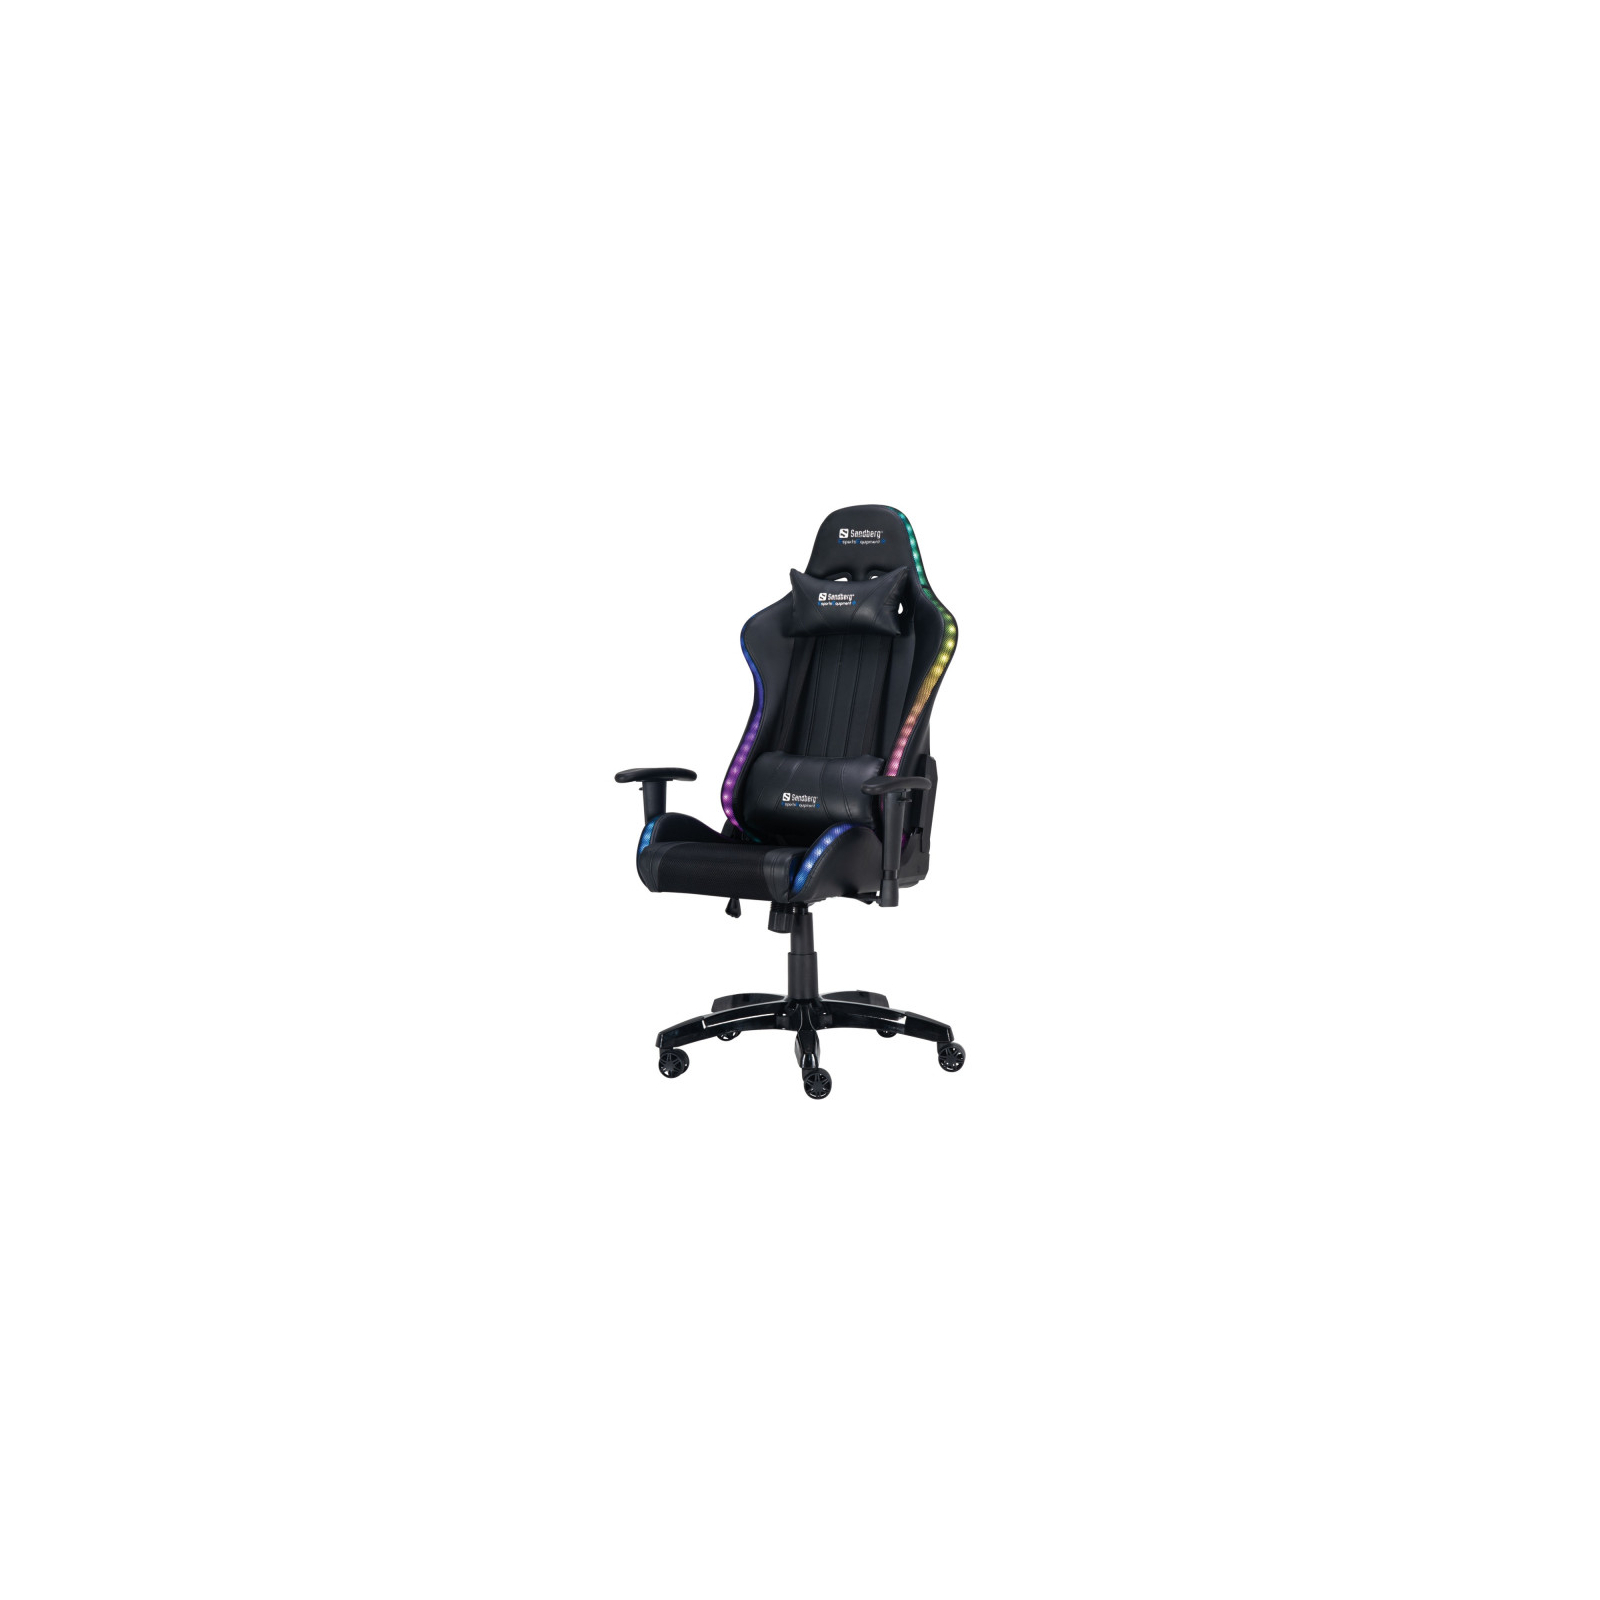 Кресло игровое Sandberg Commander RGB Black (640-94)